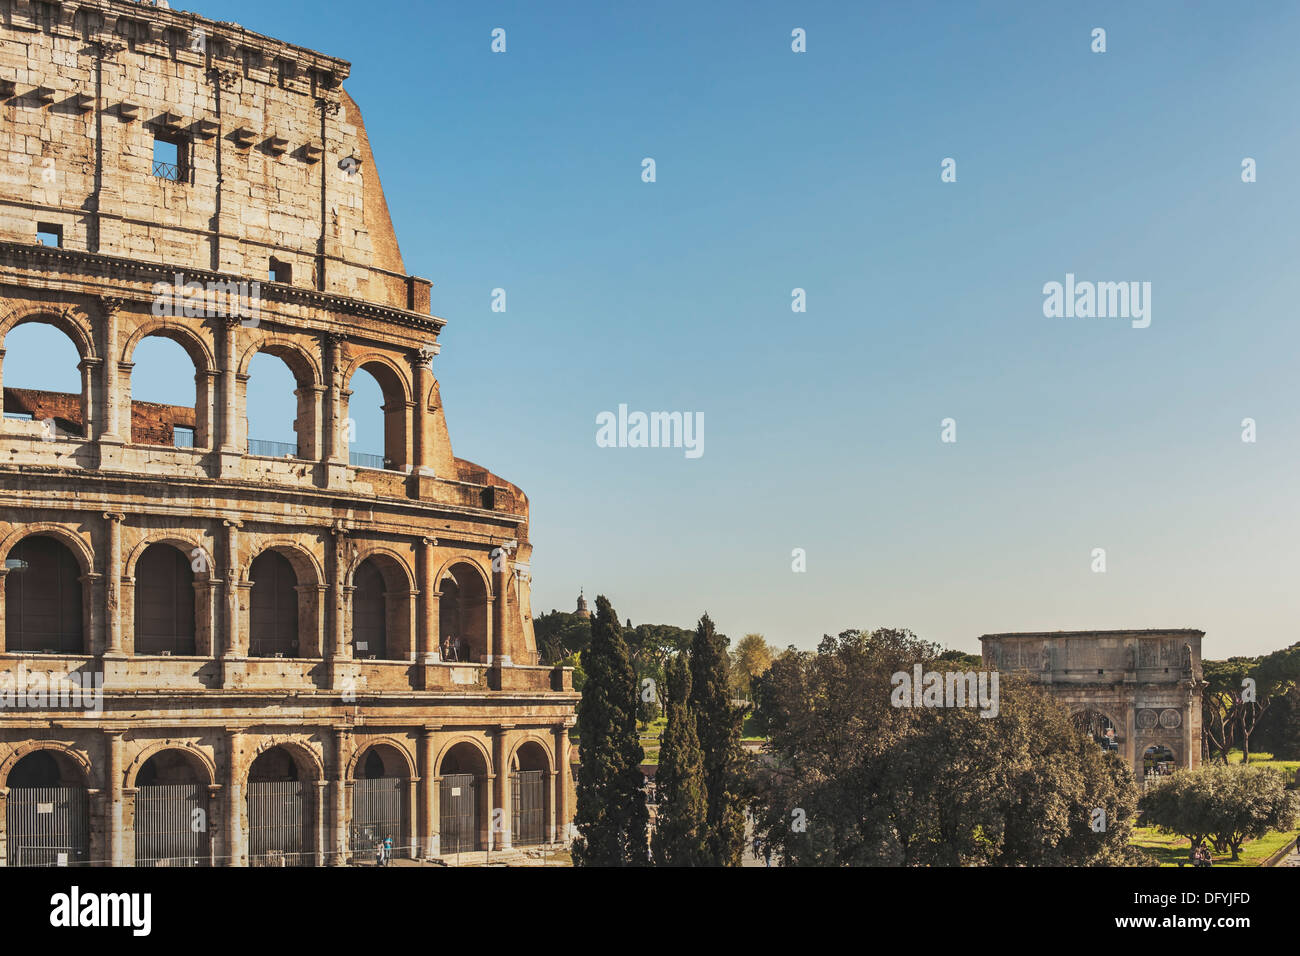 Le Colisée est le plus grand amphithéâtre, construit dans la Rome antique de 72 à 80 après J.-C., Rome, Latium, Italie, Europe Banque D'Images